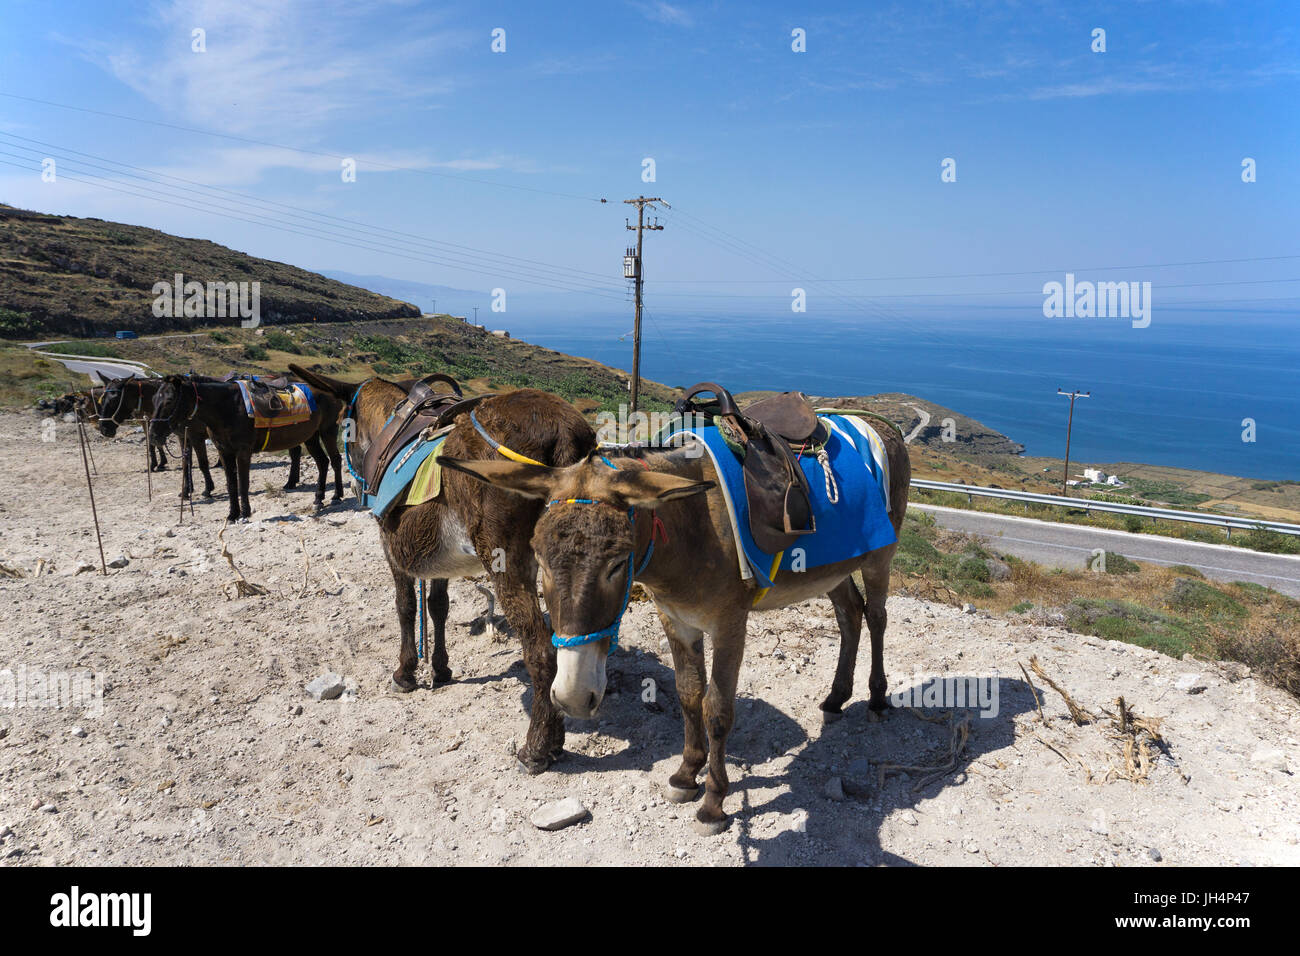 Esel stehen fuer Ausfluege bereit, Nordkueste von Santorin, Kykladen, Aegaeis, Griechenland, Mittelmeer, Europa | Donkeys at the north side of Santori Stock Photo